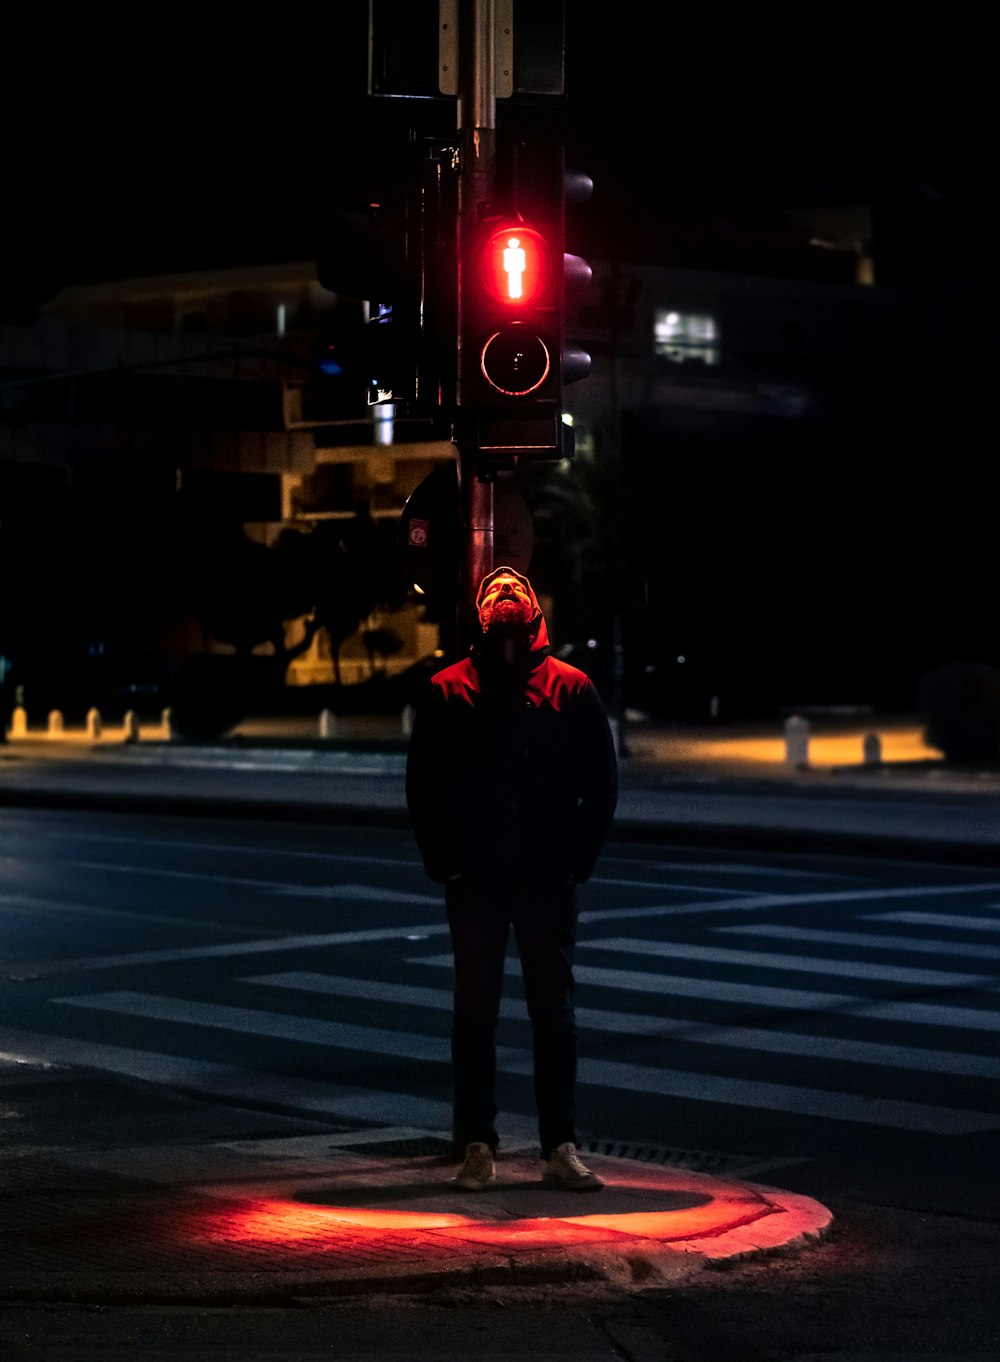 man in black jacket standing on pedestrian lane during night time